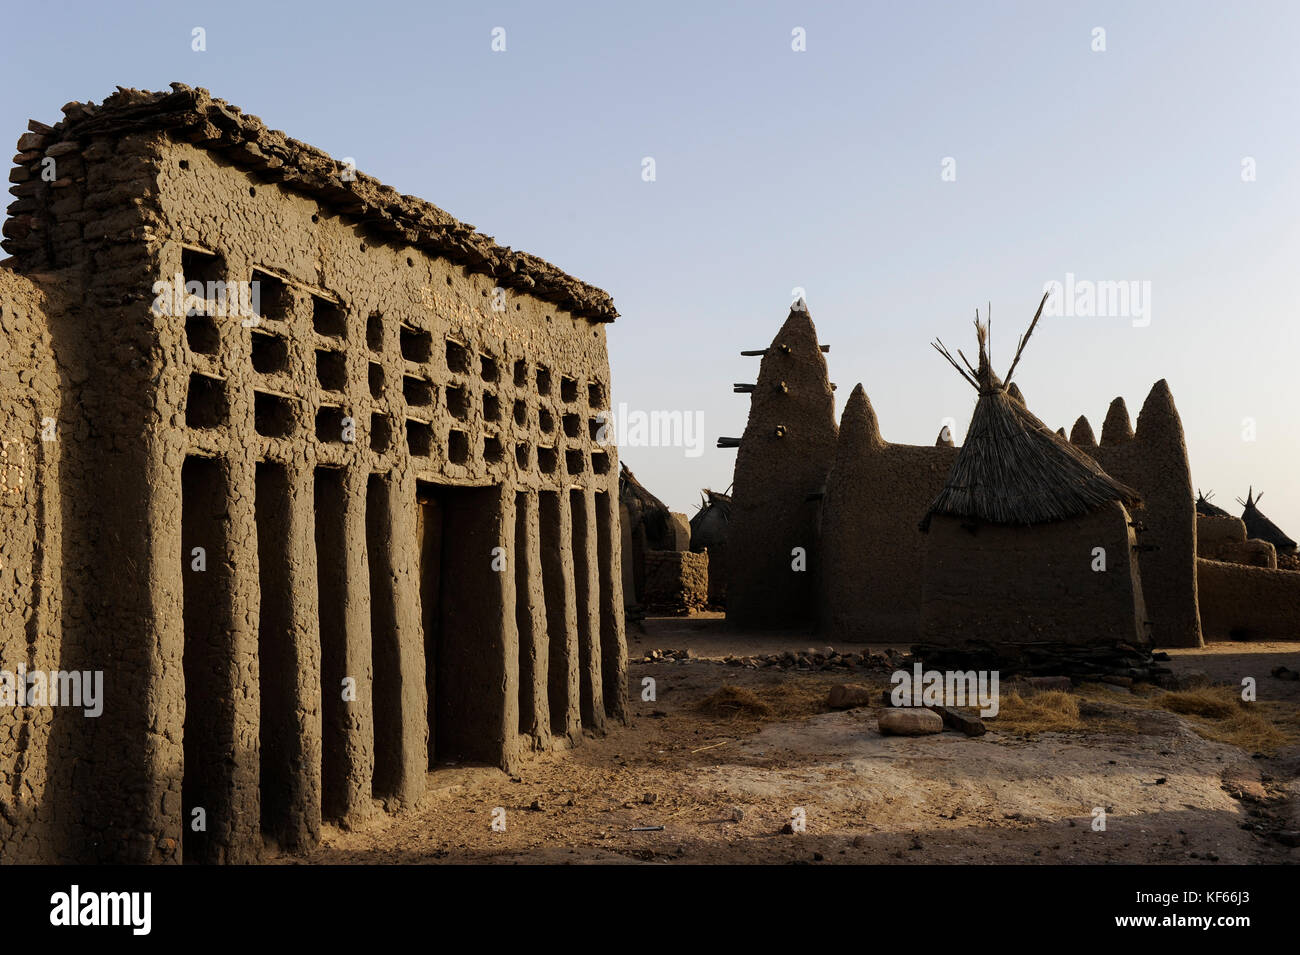 Land der Dogon in Mali, Dogon Village mit Ton Architektur an der Falaise die UNESCO Welterbe/MALI, etwa 20 km von Bandiagara südoestlich verlaeuft die rund 200 km lange Falaise, UNESCO-Welterbe, eine teilweise stark erodierte Sandsteinwand bis zu 300m Höhe, hier befinden sich viele Dogon Doerfer im Lehmbau Illustr. Stockfoto